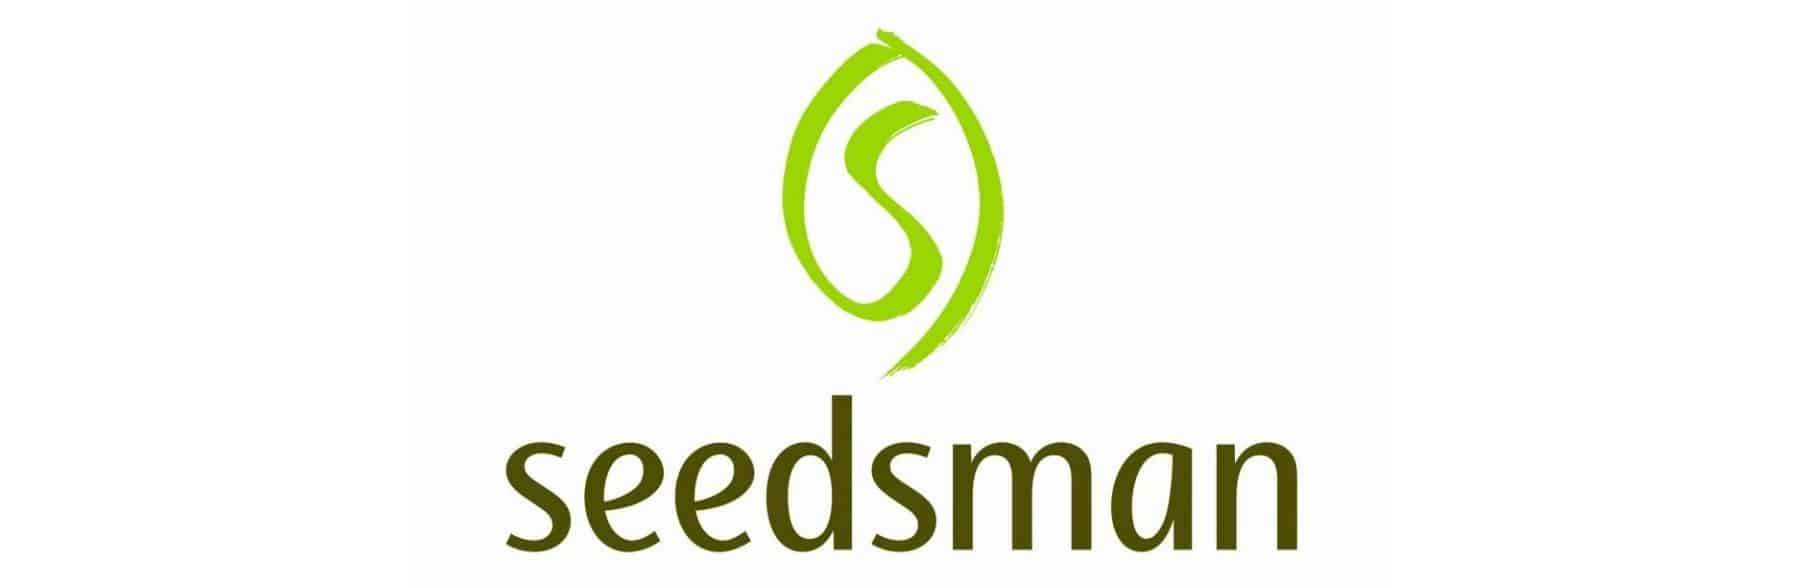 Seedsman Seed Bank